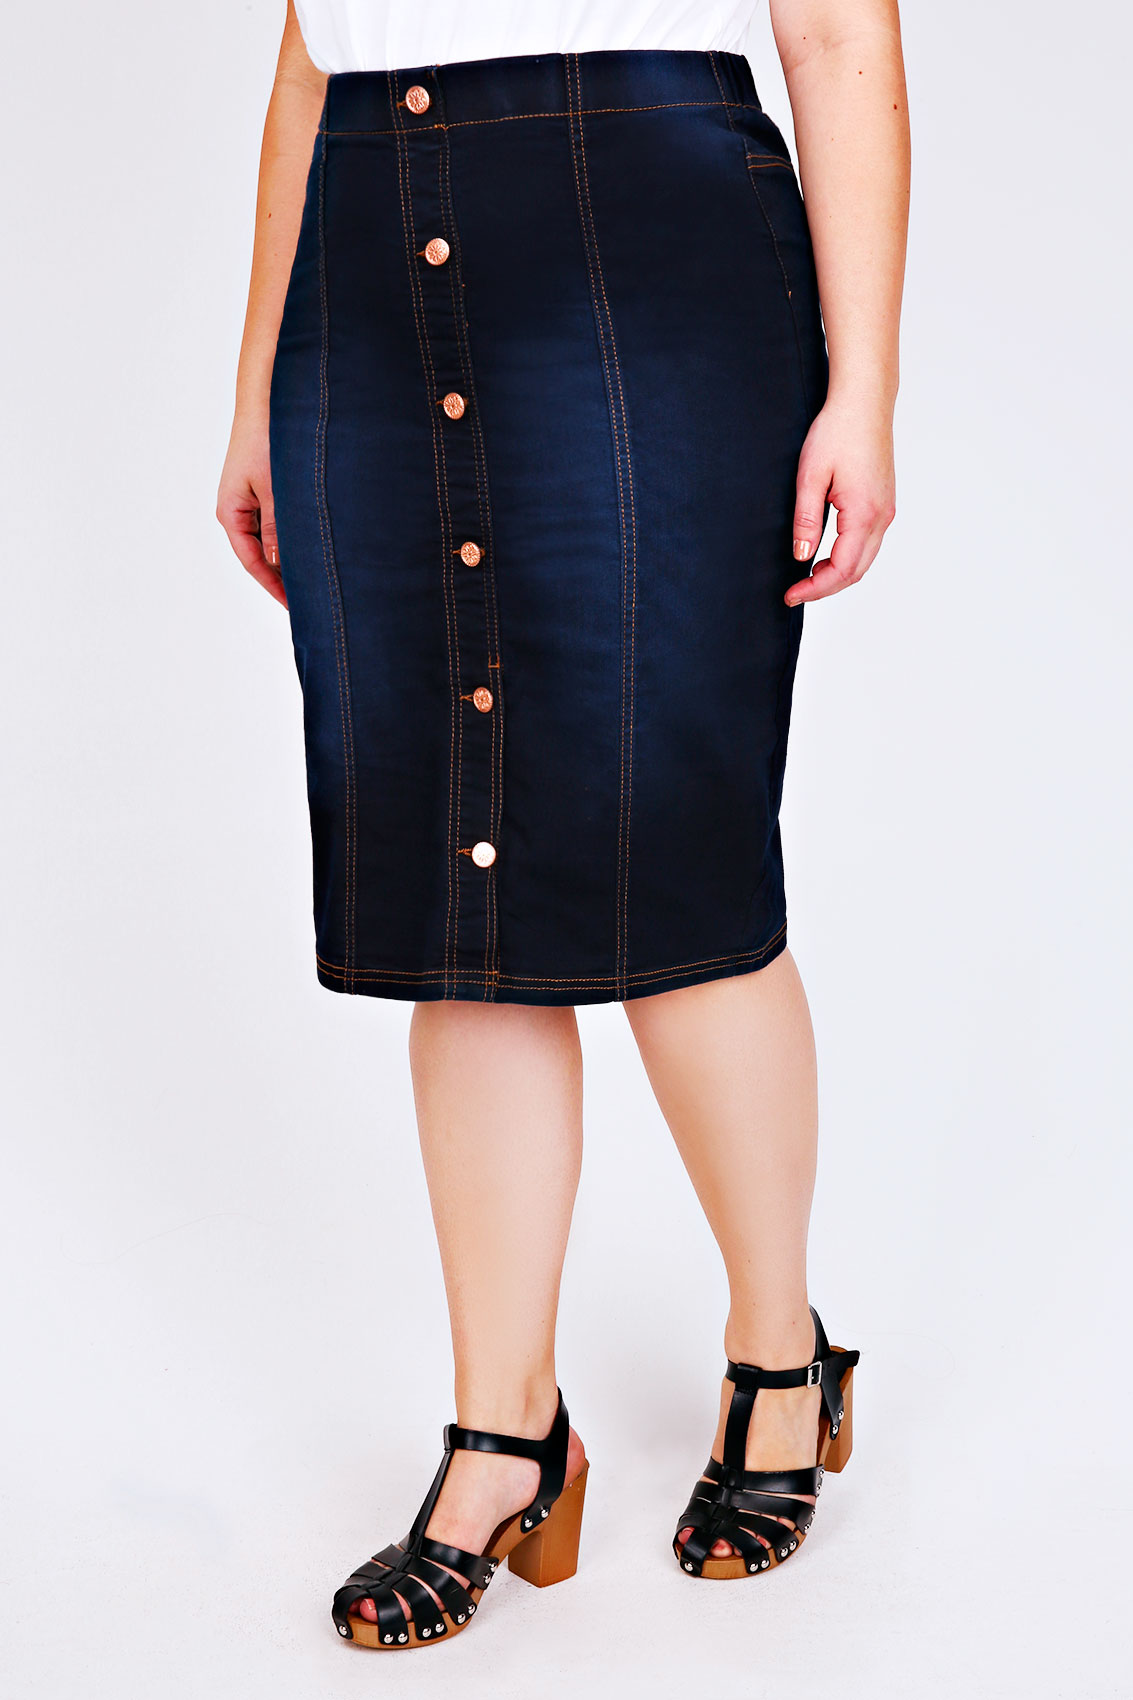 Indigo Blue Denim Button Front Pull On Midi Skirt Plus Size 16 to 28